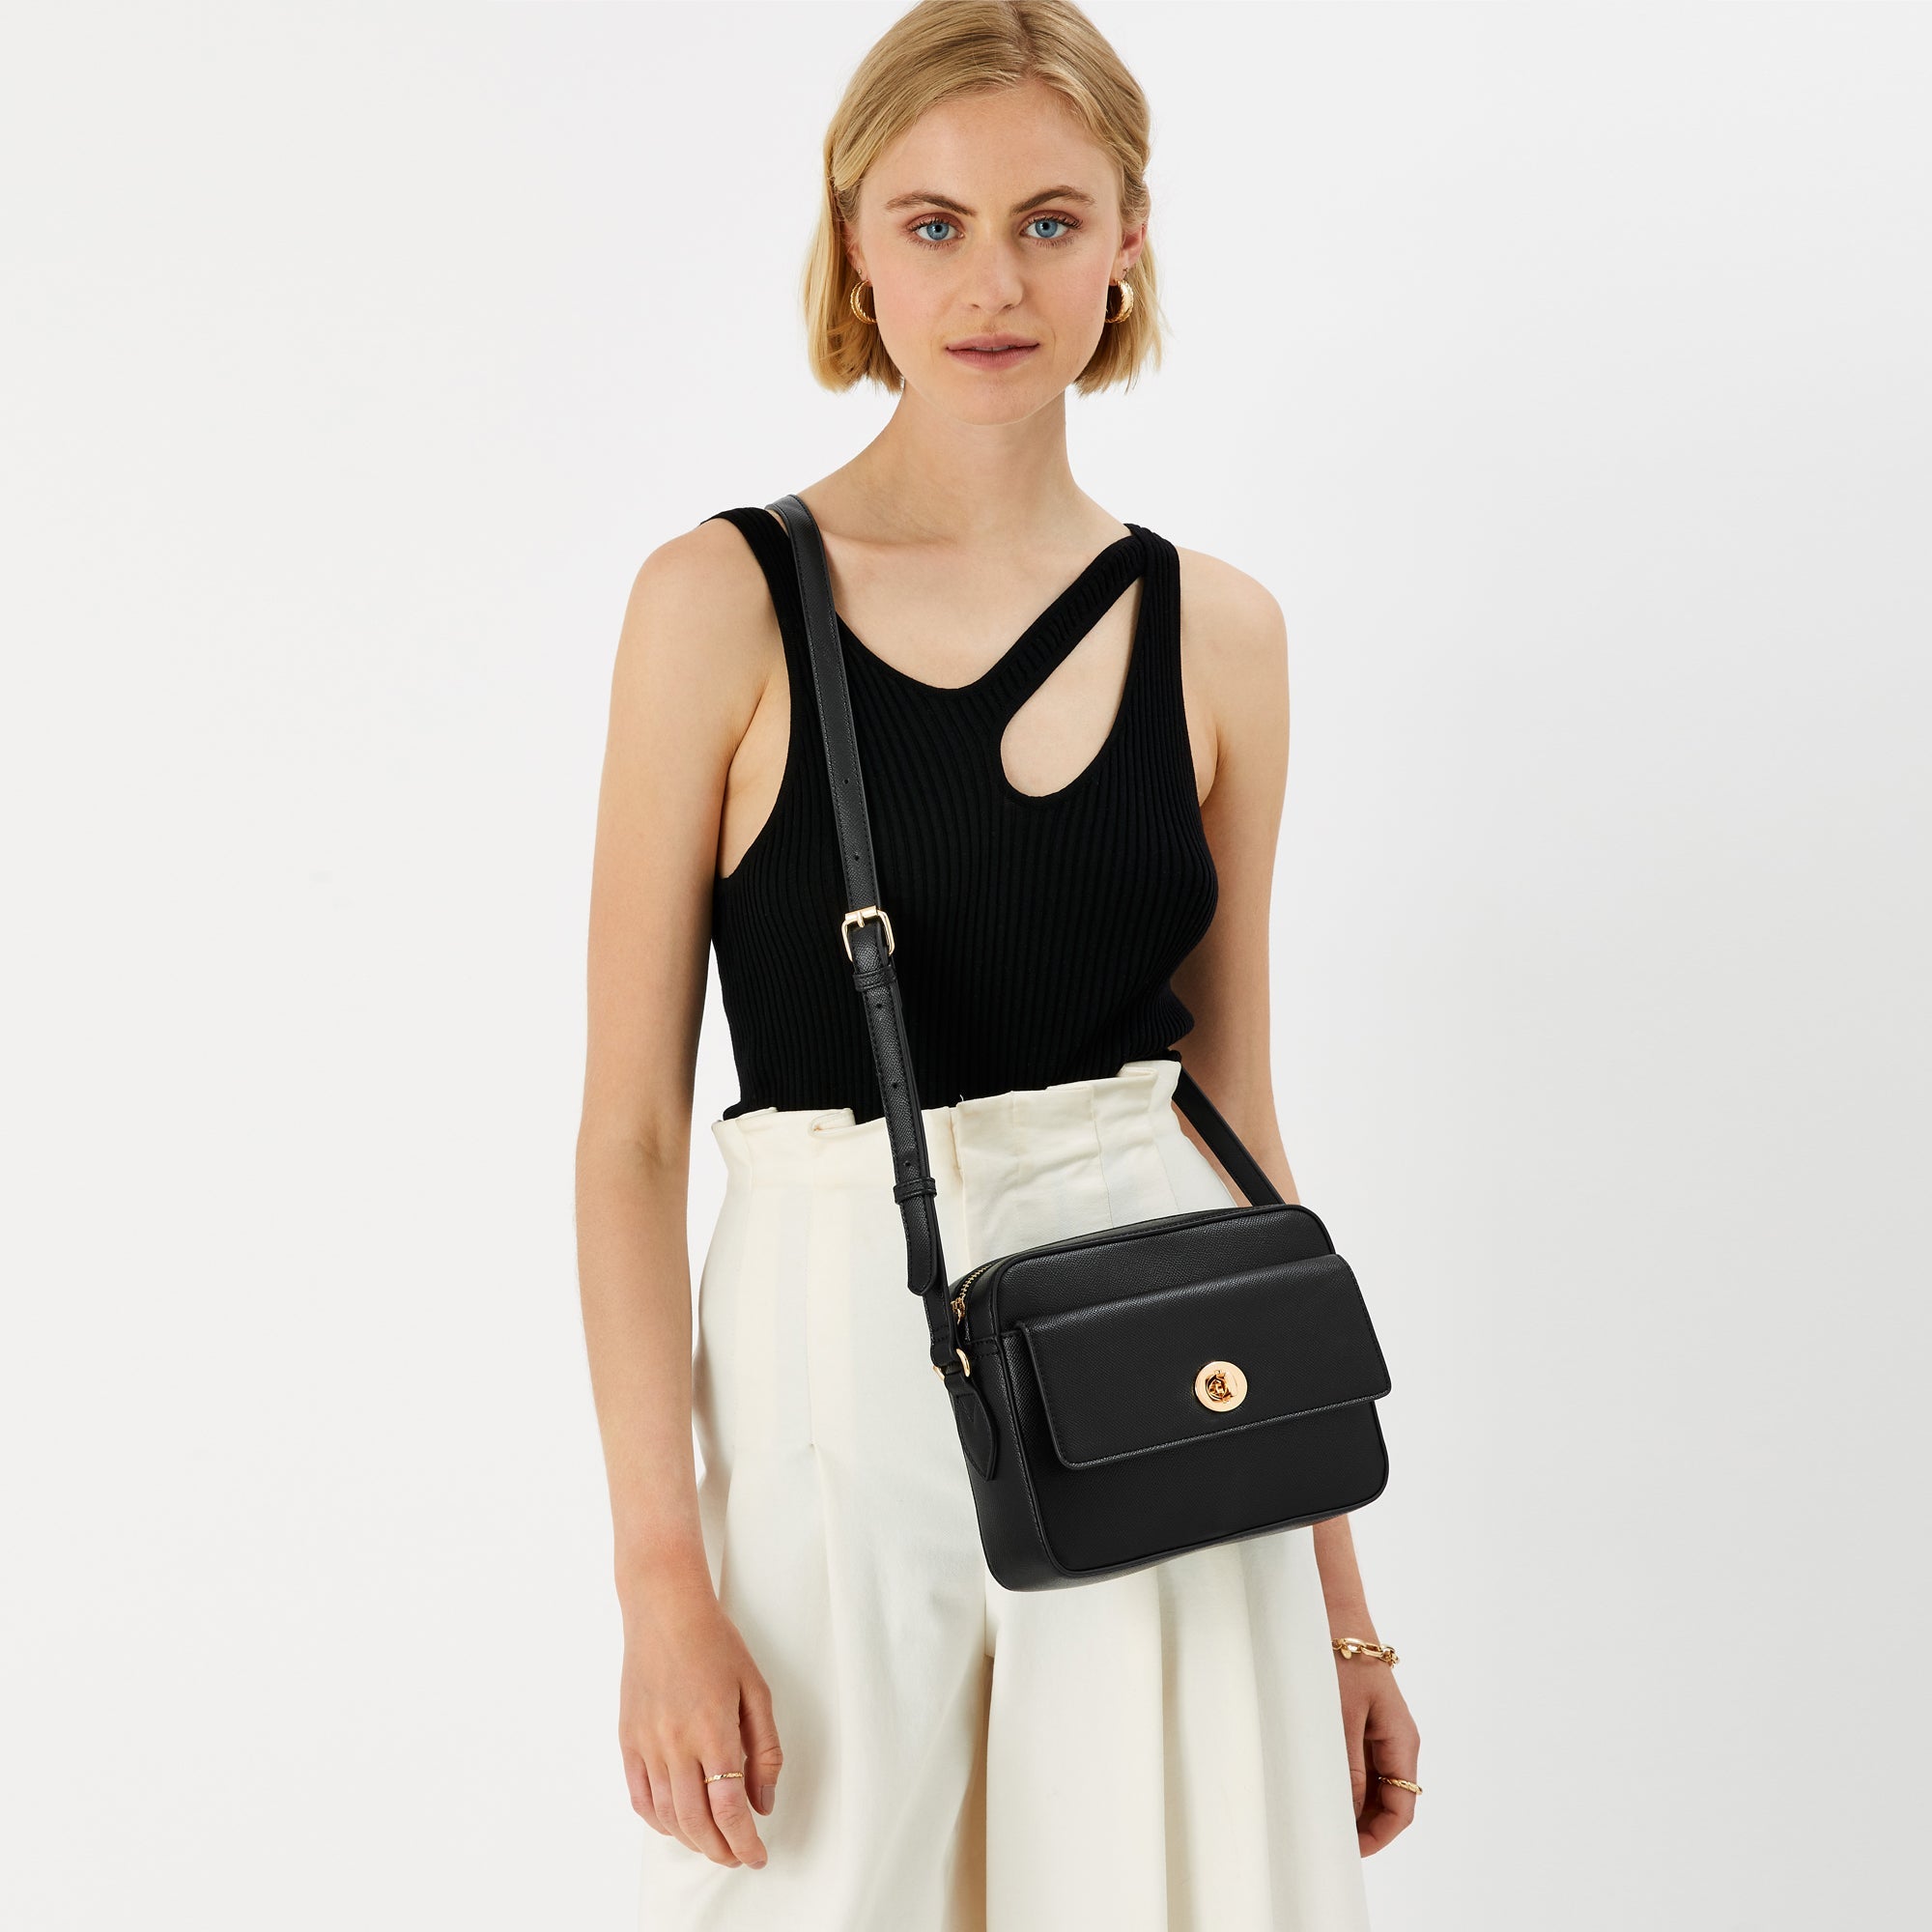 Accessorize London Women's Faux Leather Black Tyler Twistlock Sling Bag